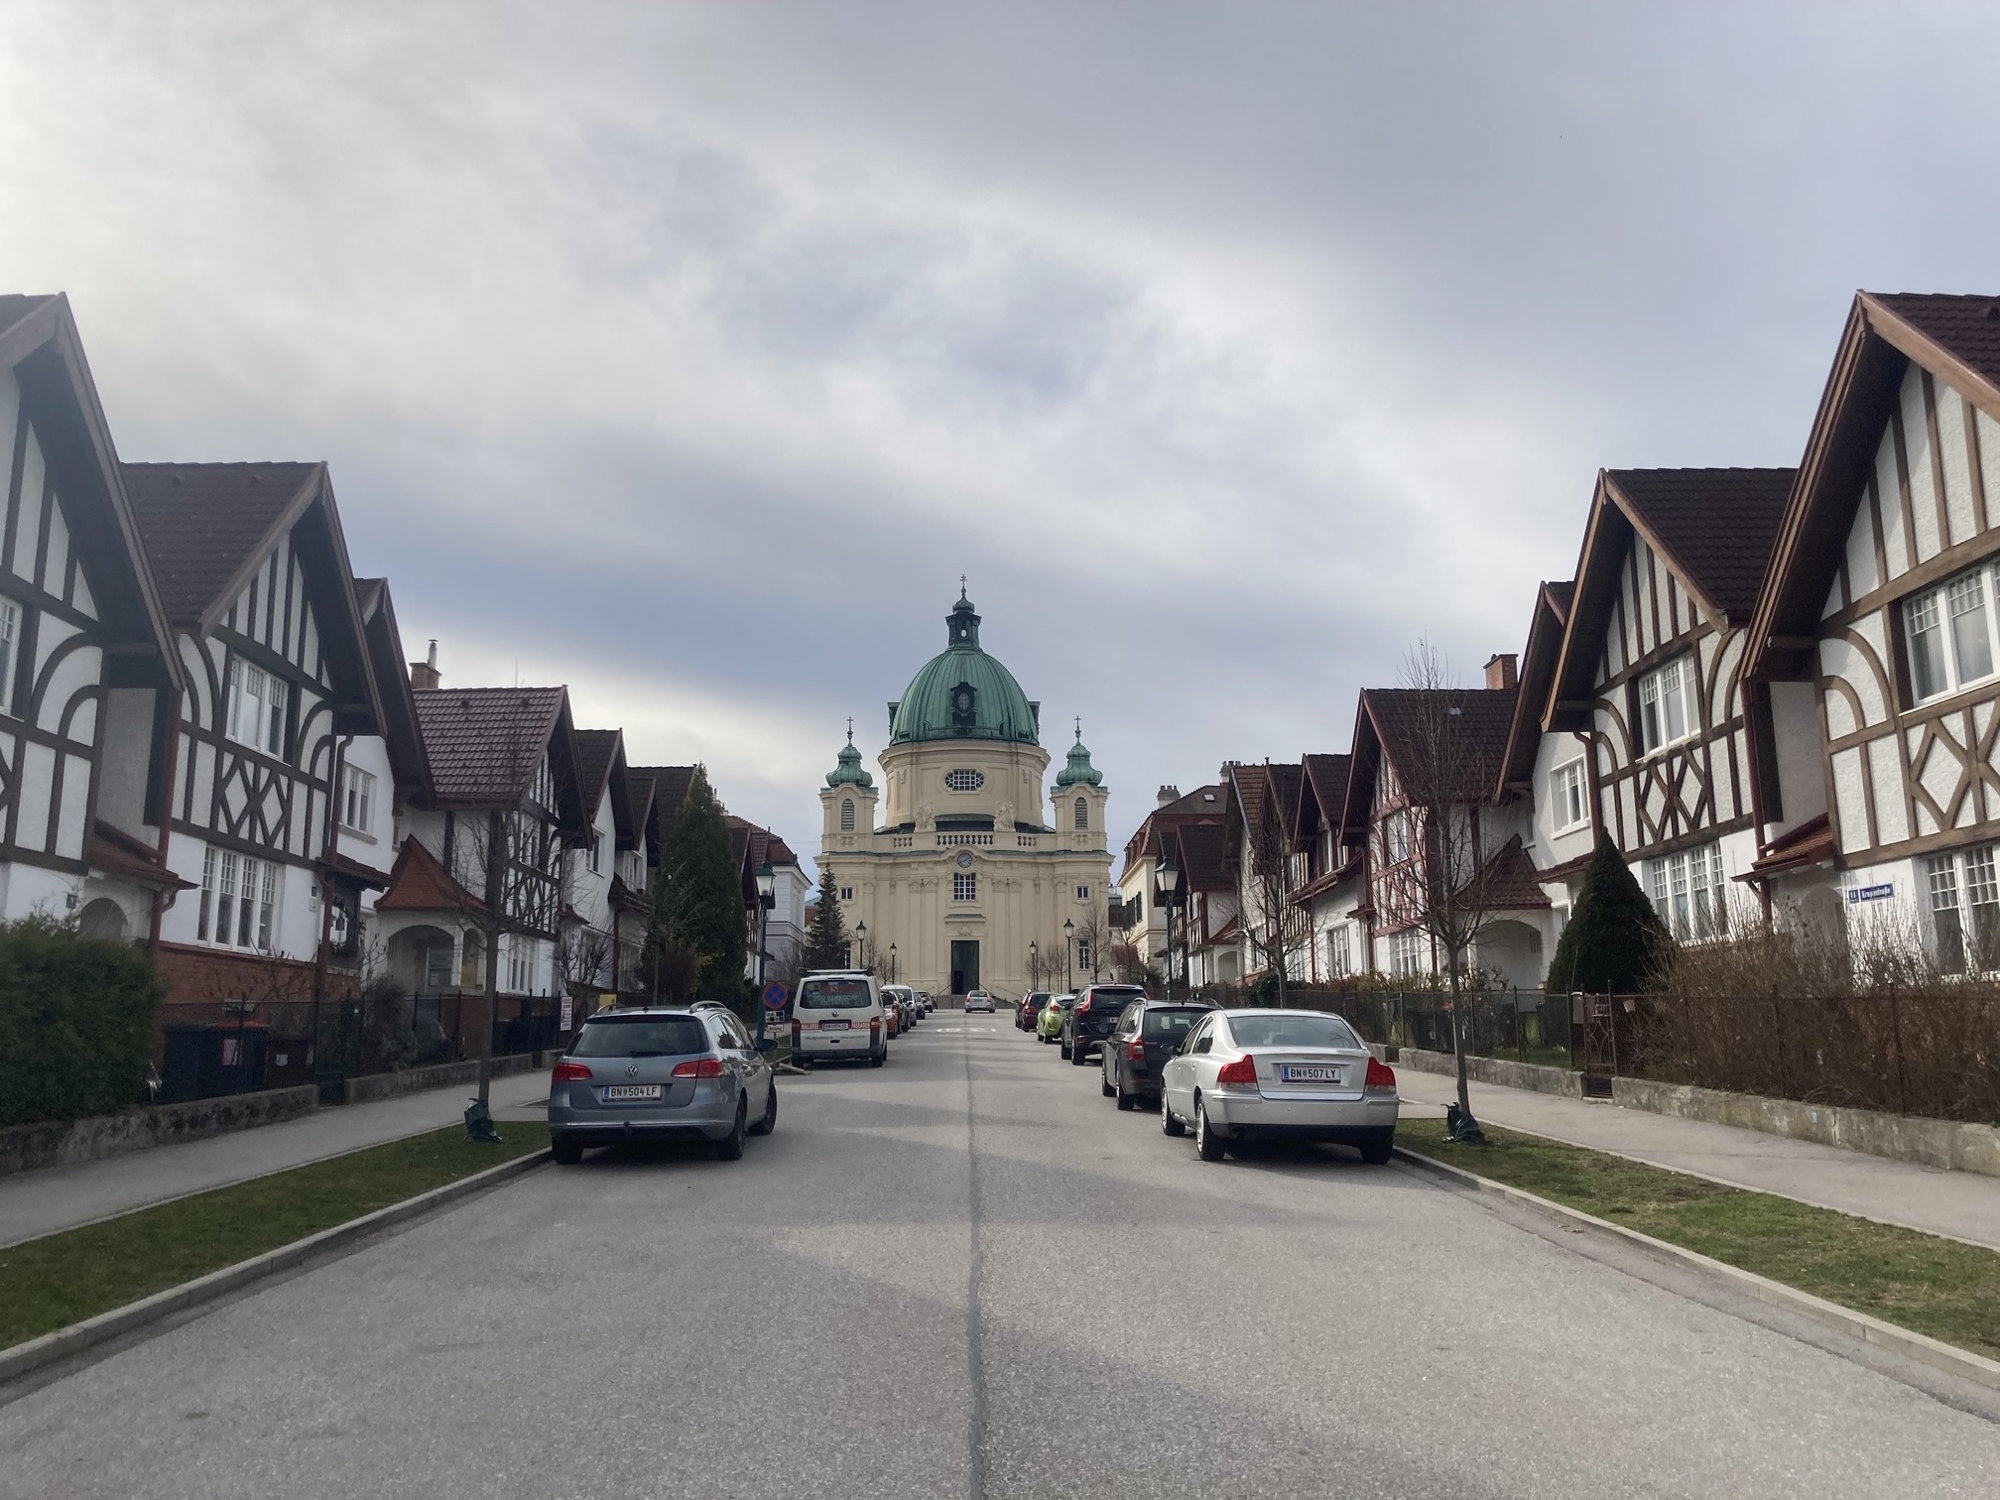 mittig im Hintergrund Kirche in Berndorf, links und rechts der Straße stehen Häuser mit Fachwerkoptik, vor den Häusern parken Autos